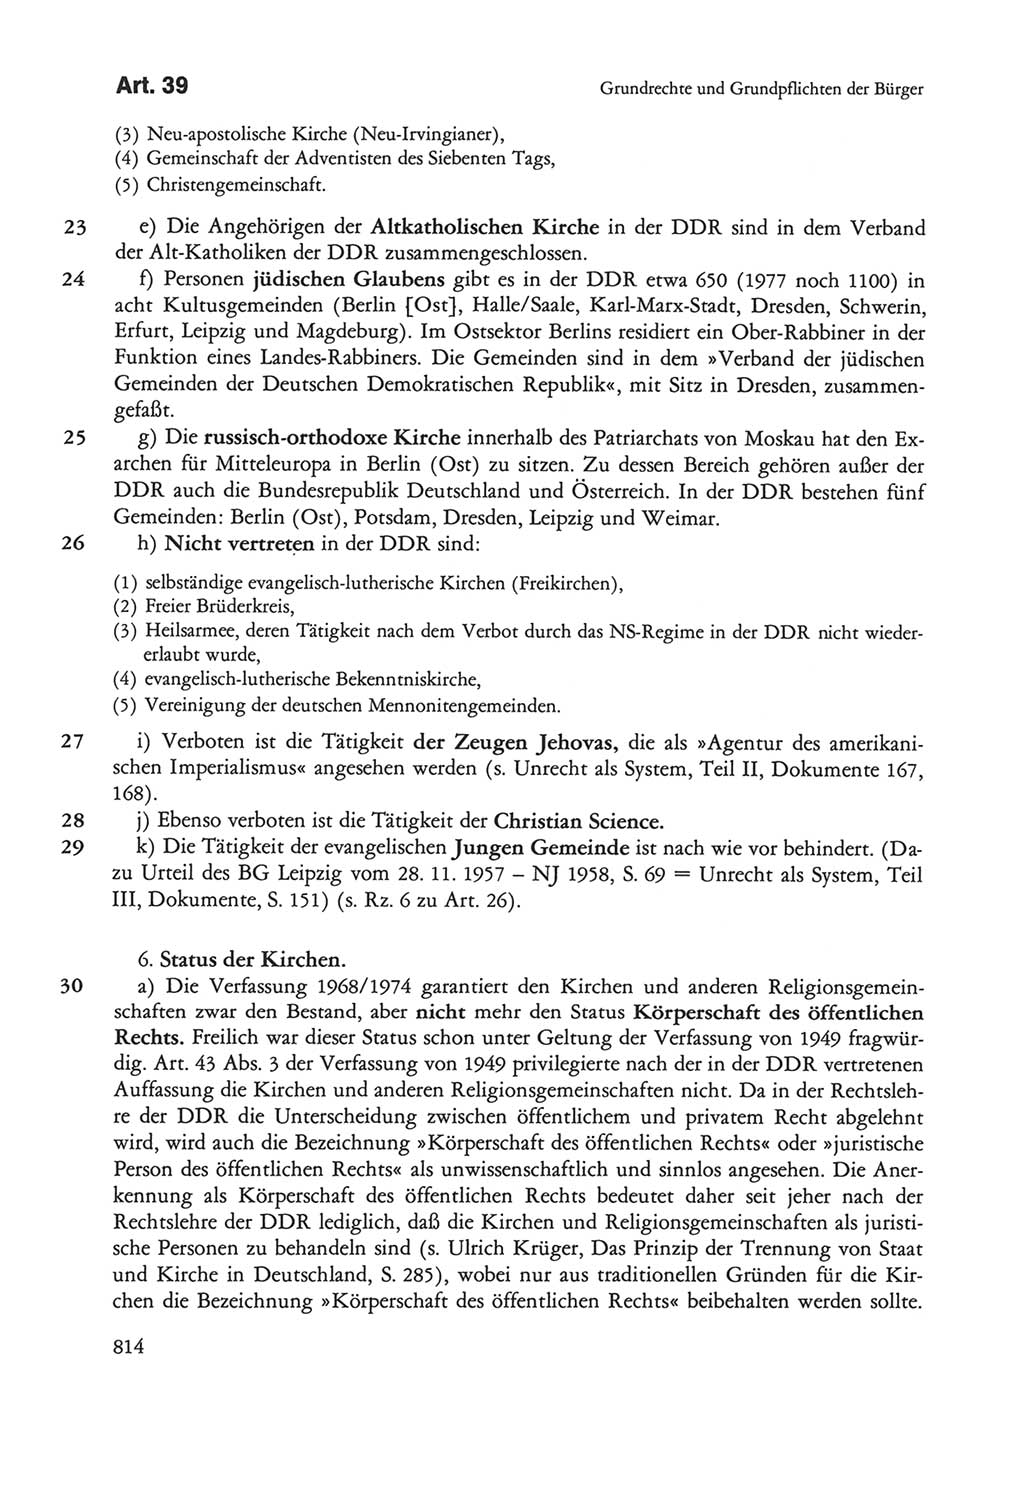 Die sozialistische Verfassung der Deutschen Demokratischen Republik (DDR), Kommentar mit einem Nachtrag 1997, Seite 814 (Soz. Verf. DDR Komm. Nachtr. 1997, S. 814)